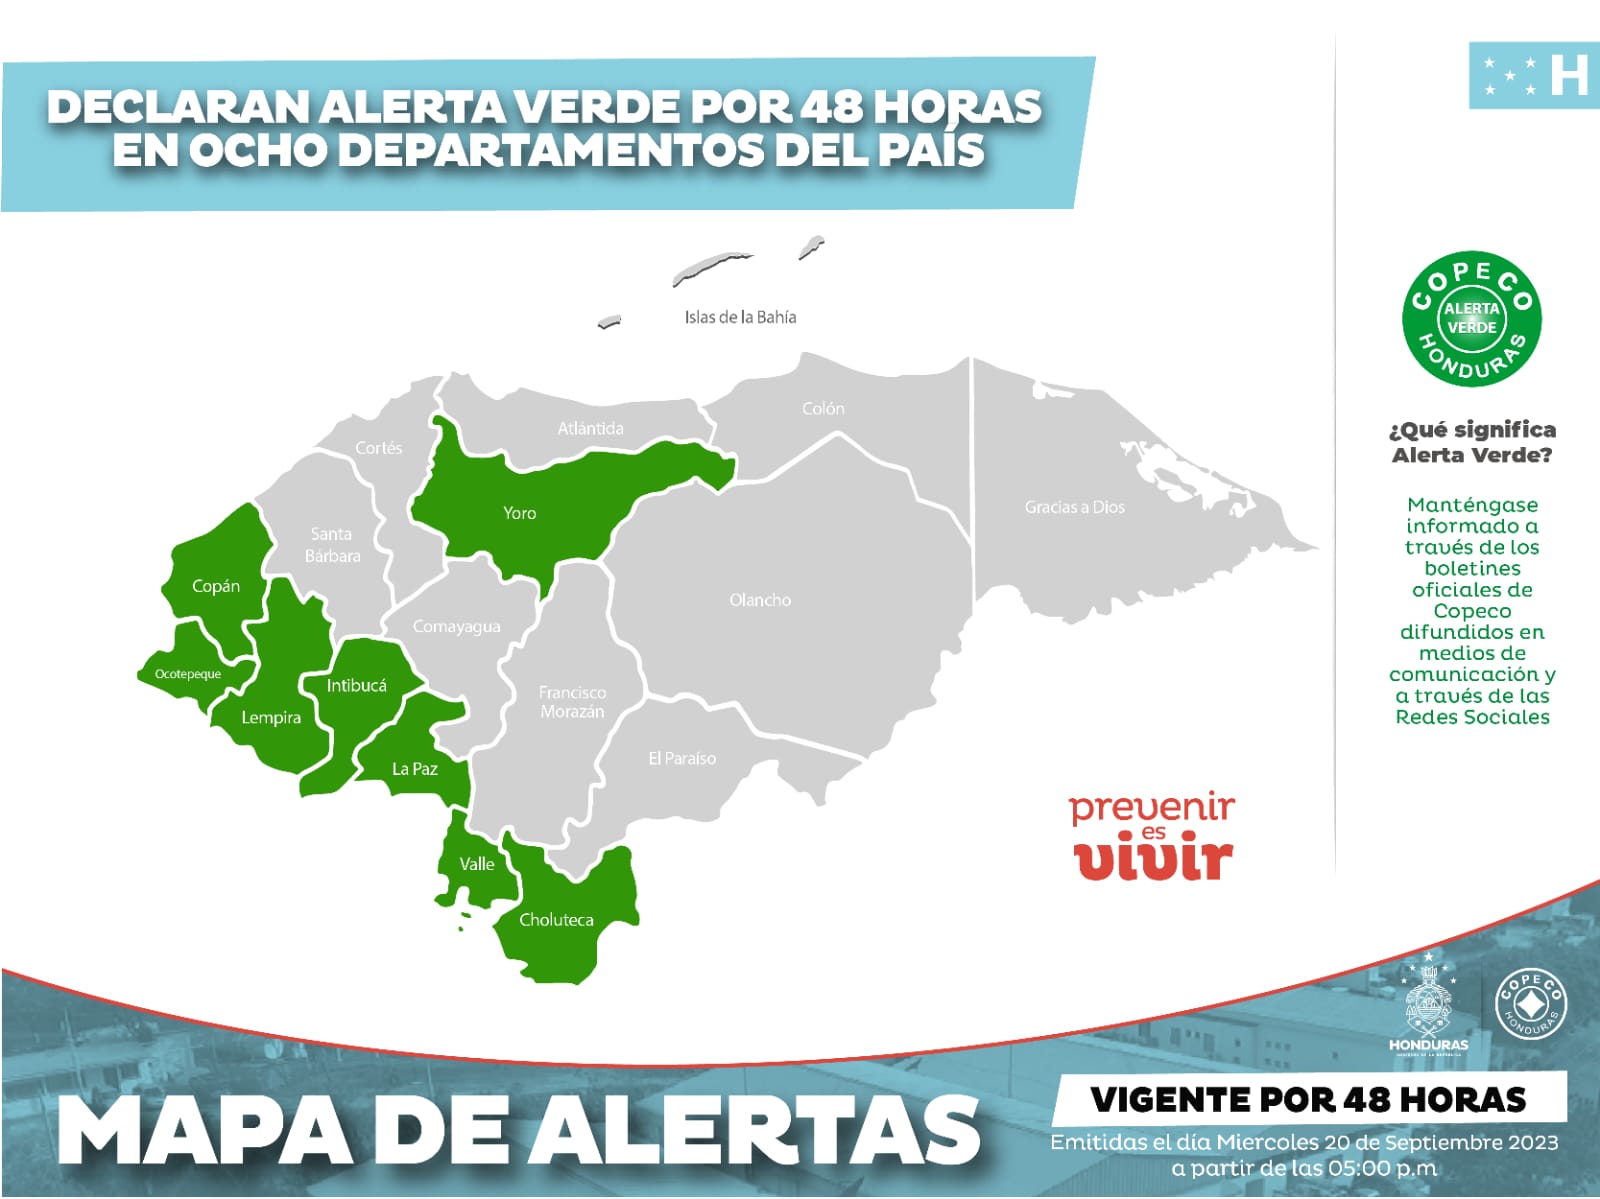 COPECO declaran Alerta Verde por 48 horas en ocho departamentos del país